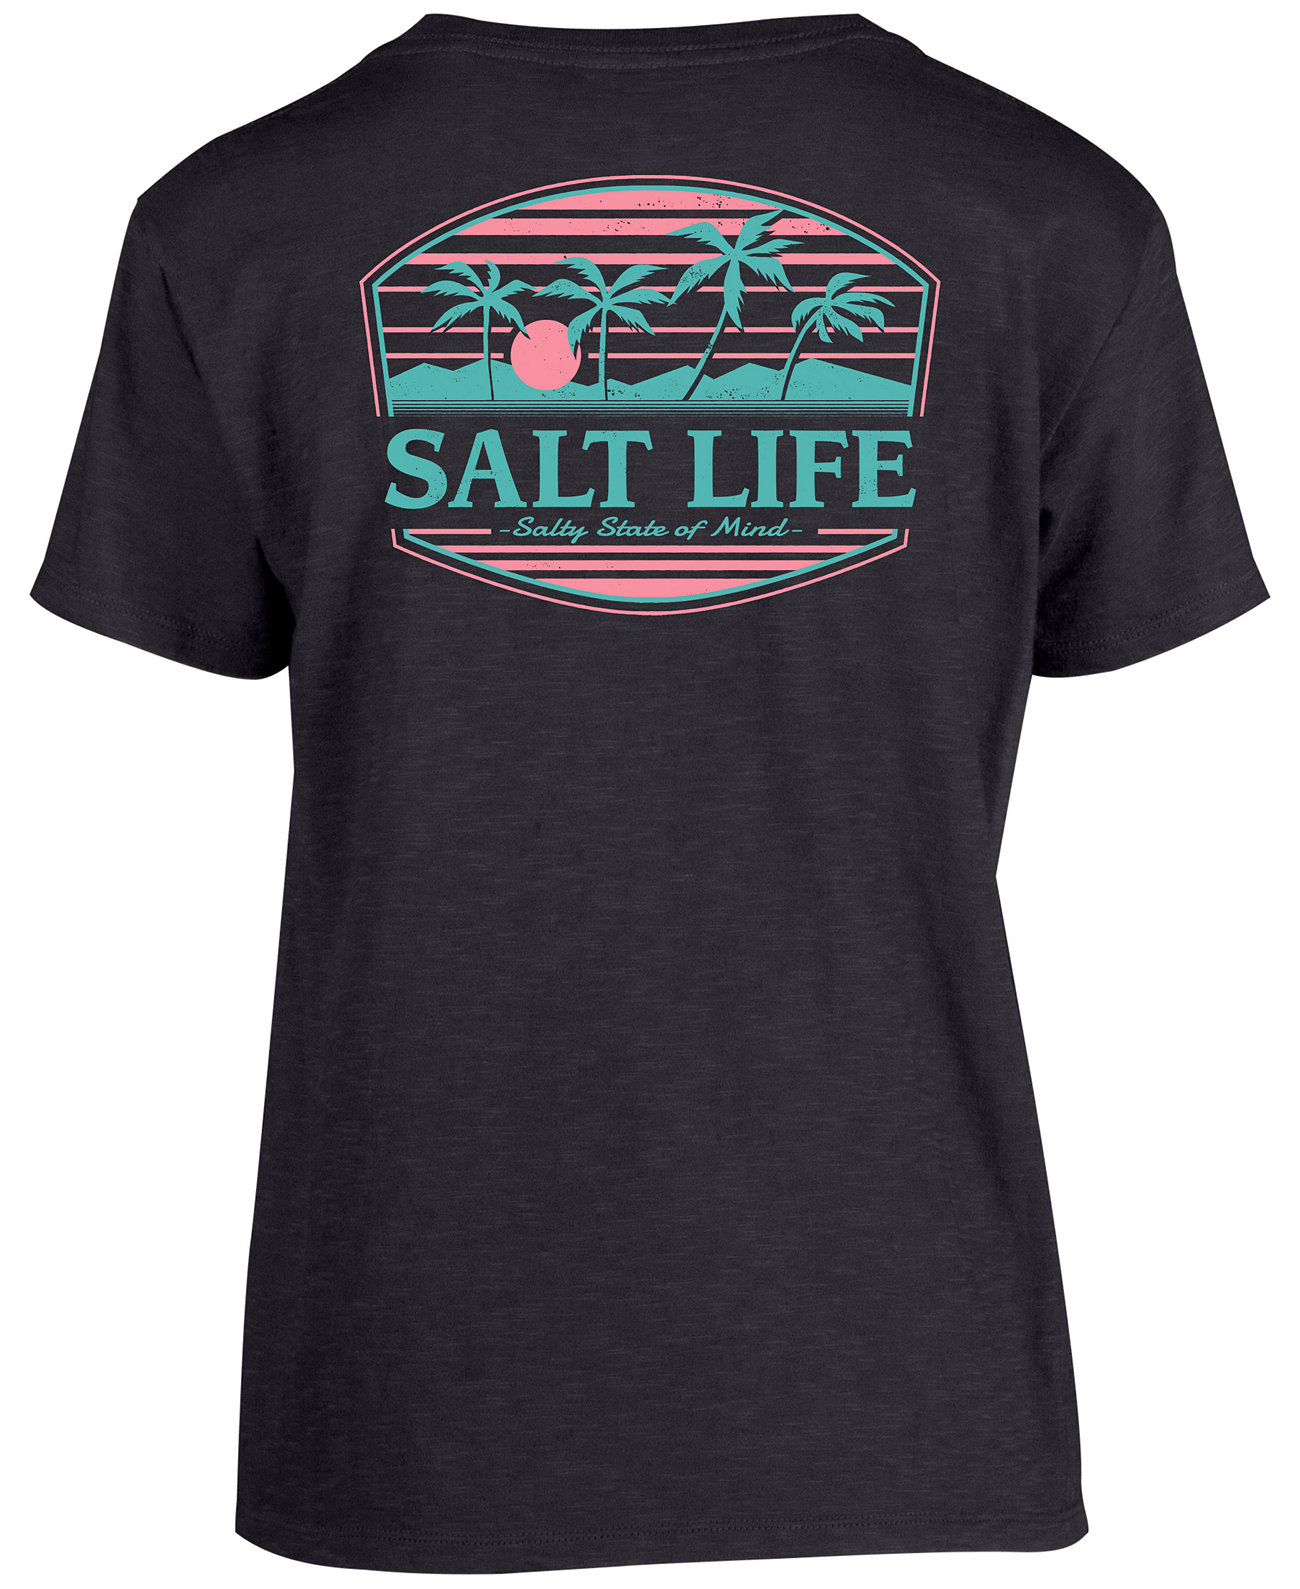 Женская футболка с рисунком Summer Glow Salt Life